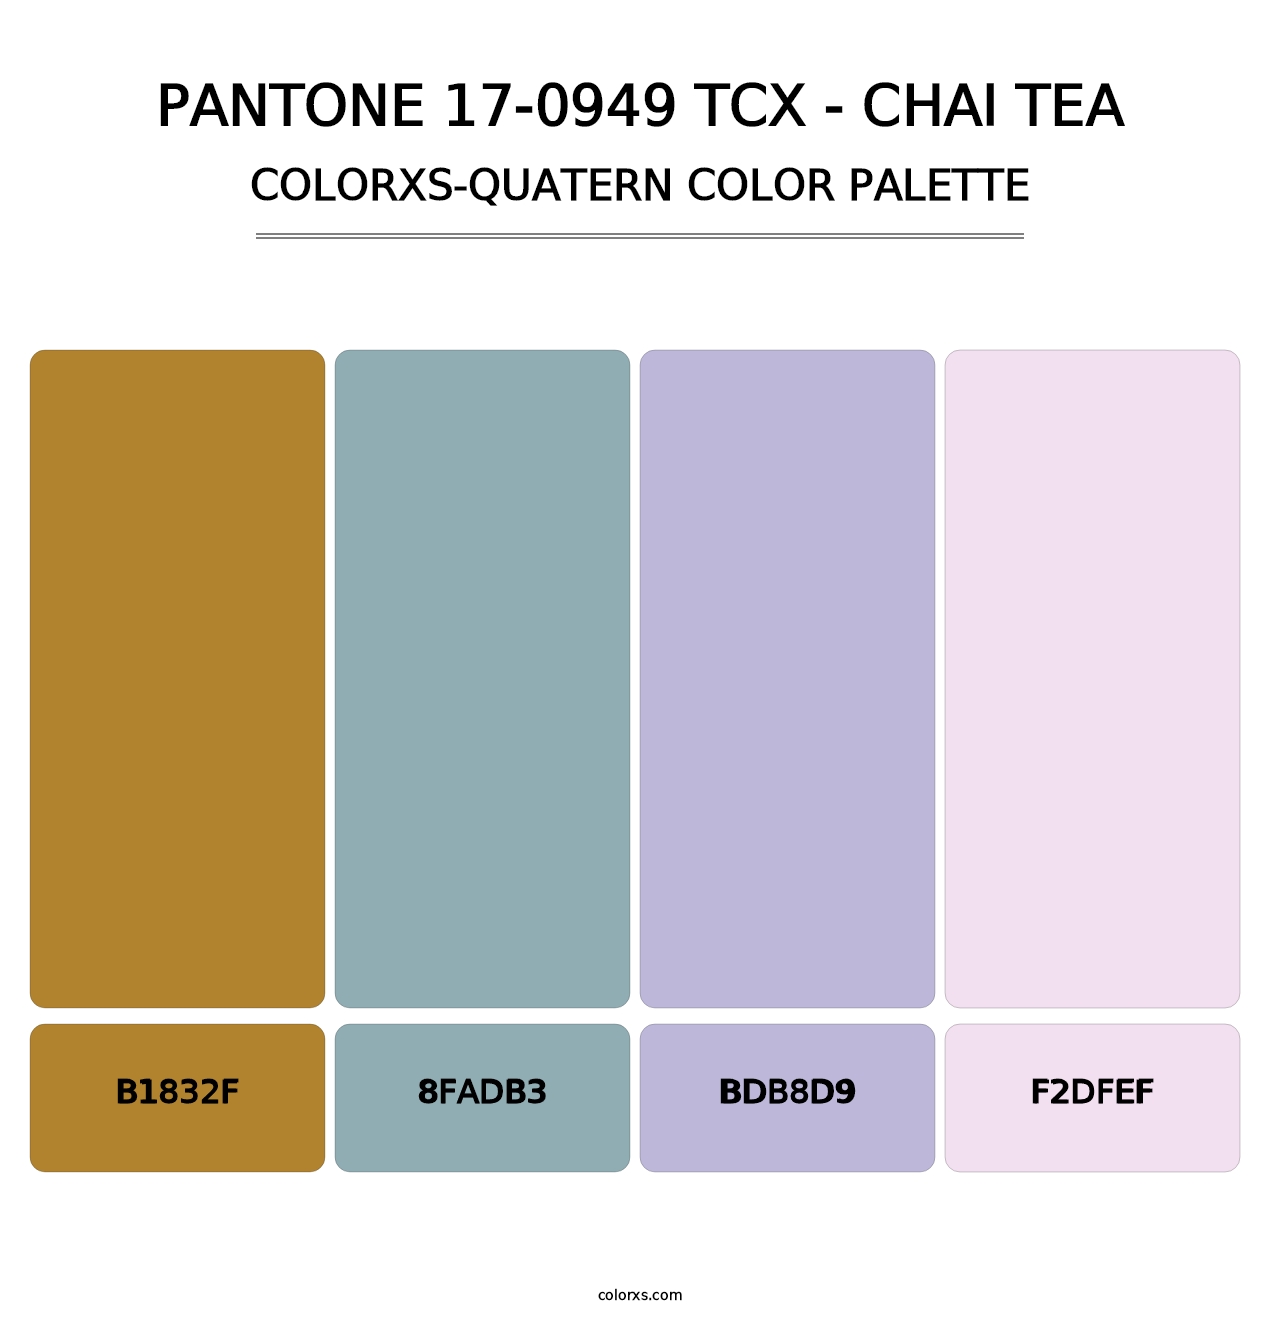 PANTONE 17-0949 TCX - Chai Tea - Colorxs Quatern Palette